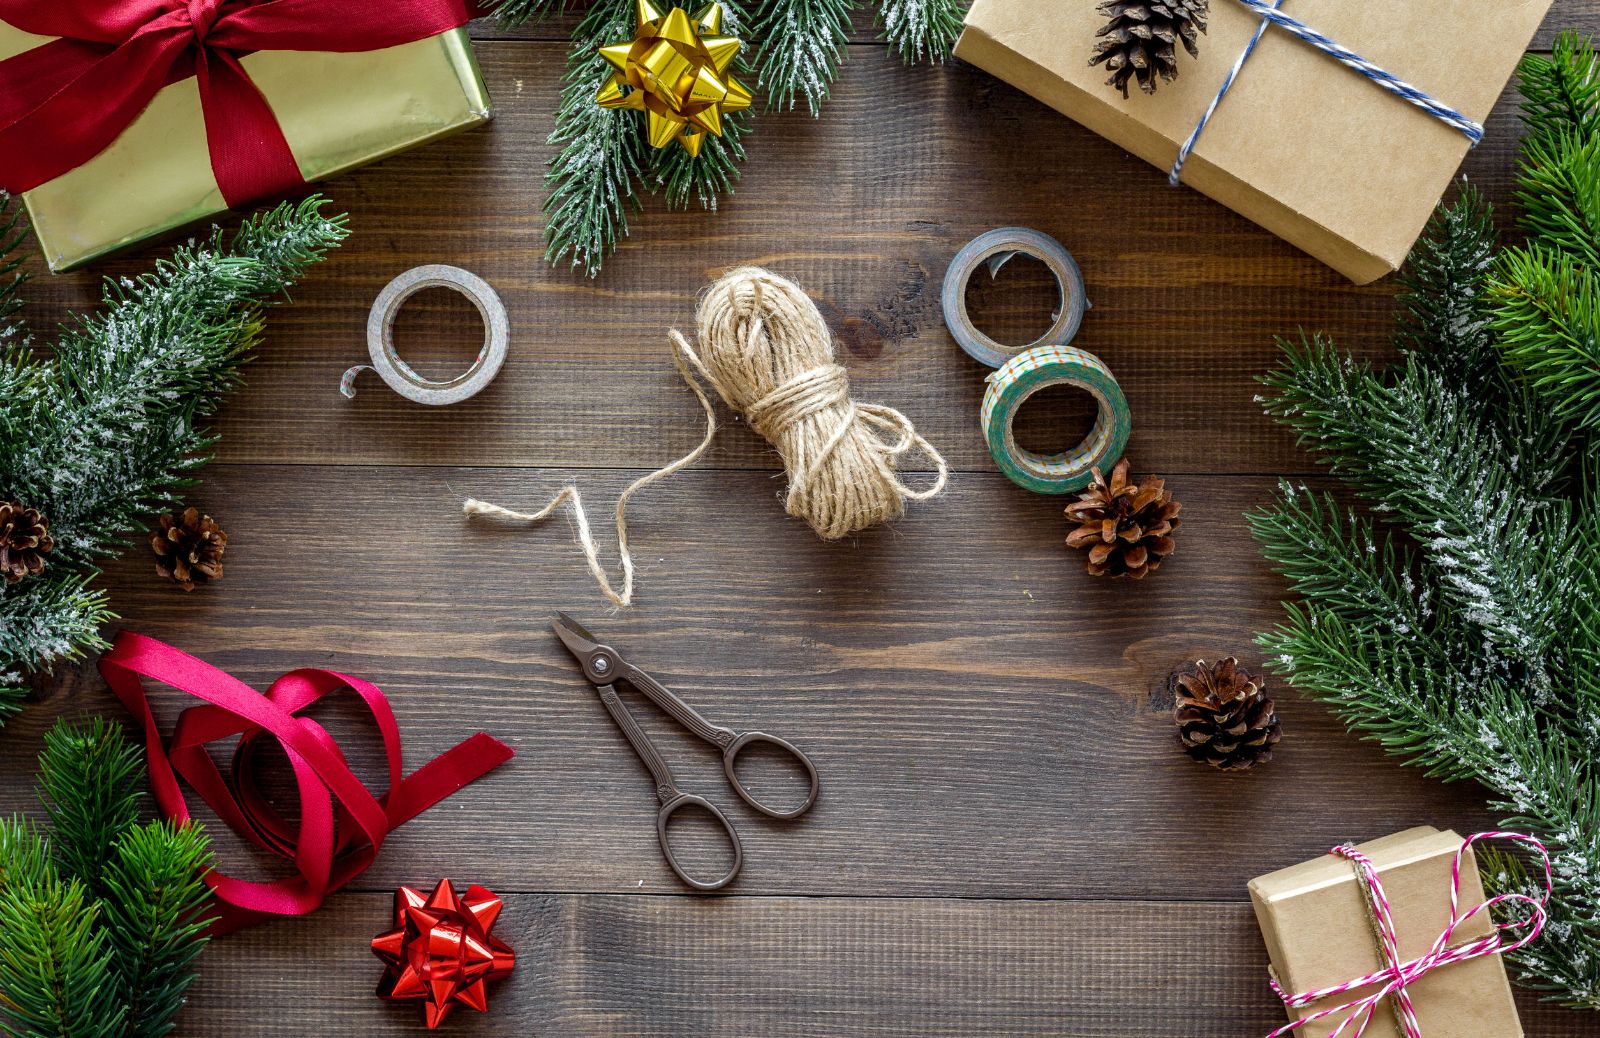 Decorazioni natalizie con pigne: 5 idee creative per casa